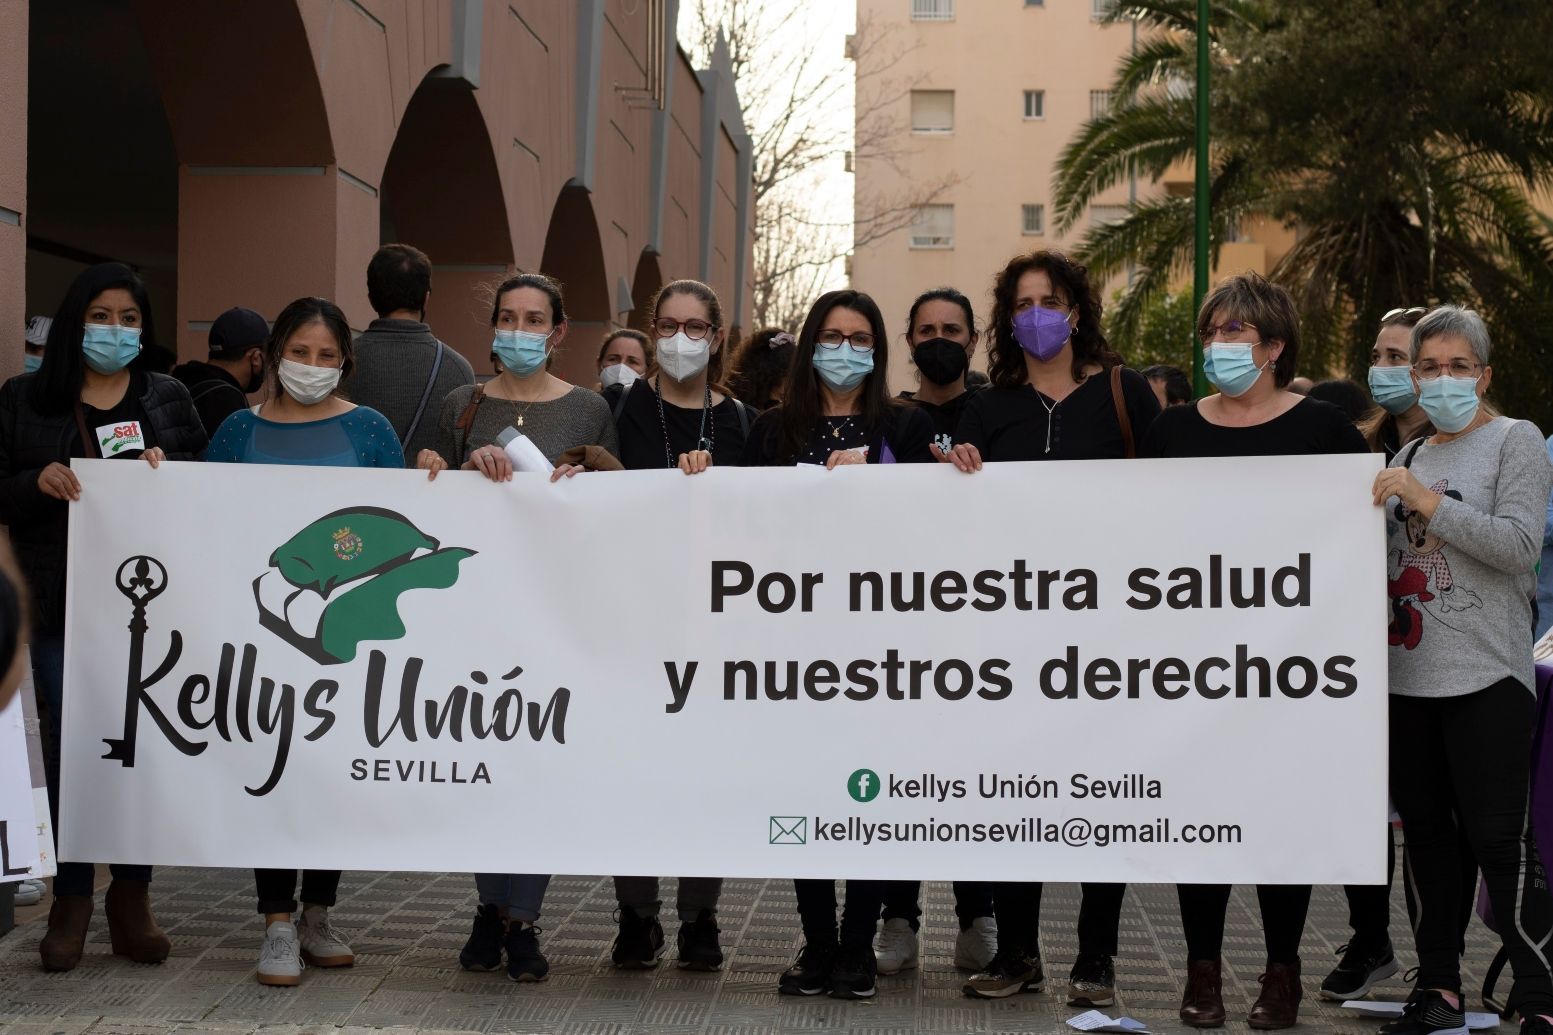 Estos son los 60 hoteles éticos en los que alojarse en Sevilla, según las 'Kellys'. FOTO: Kellys de Sevilla